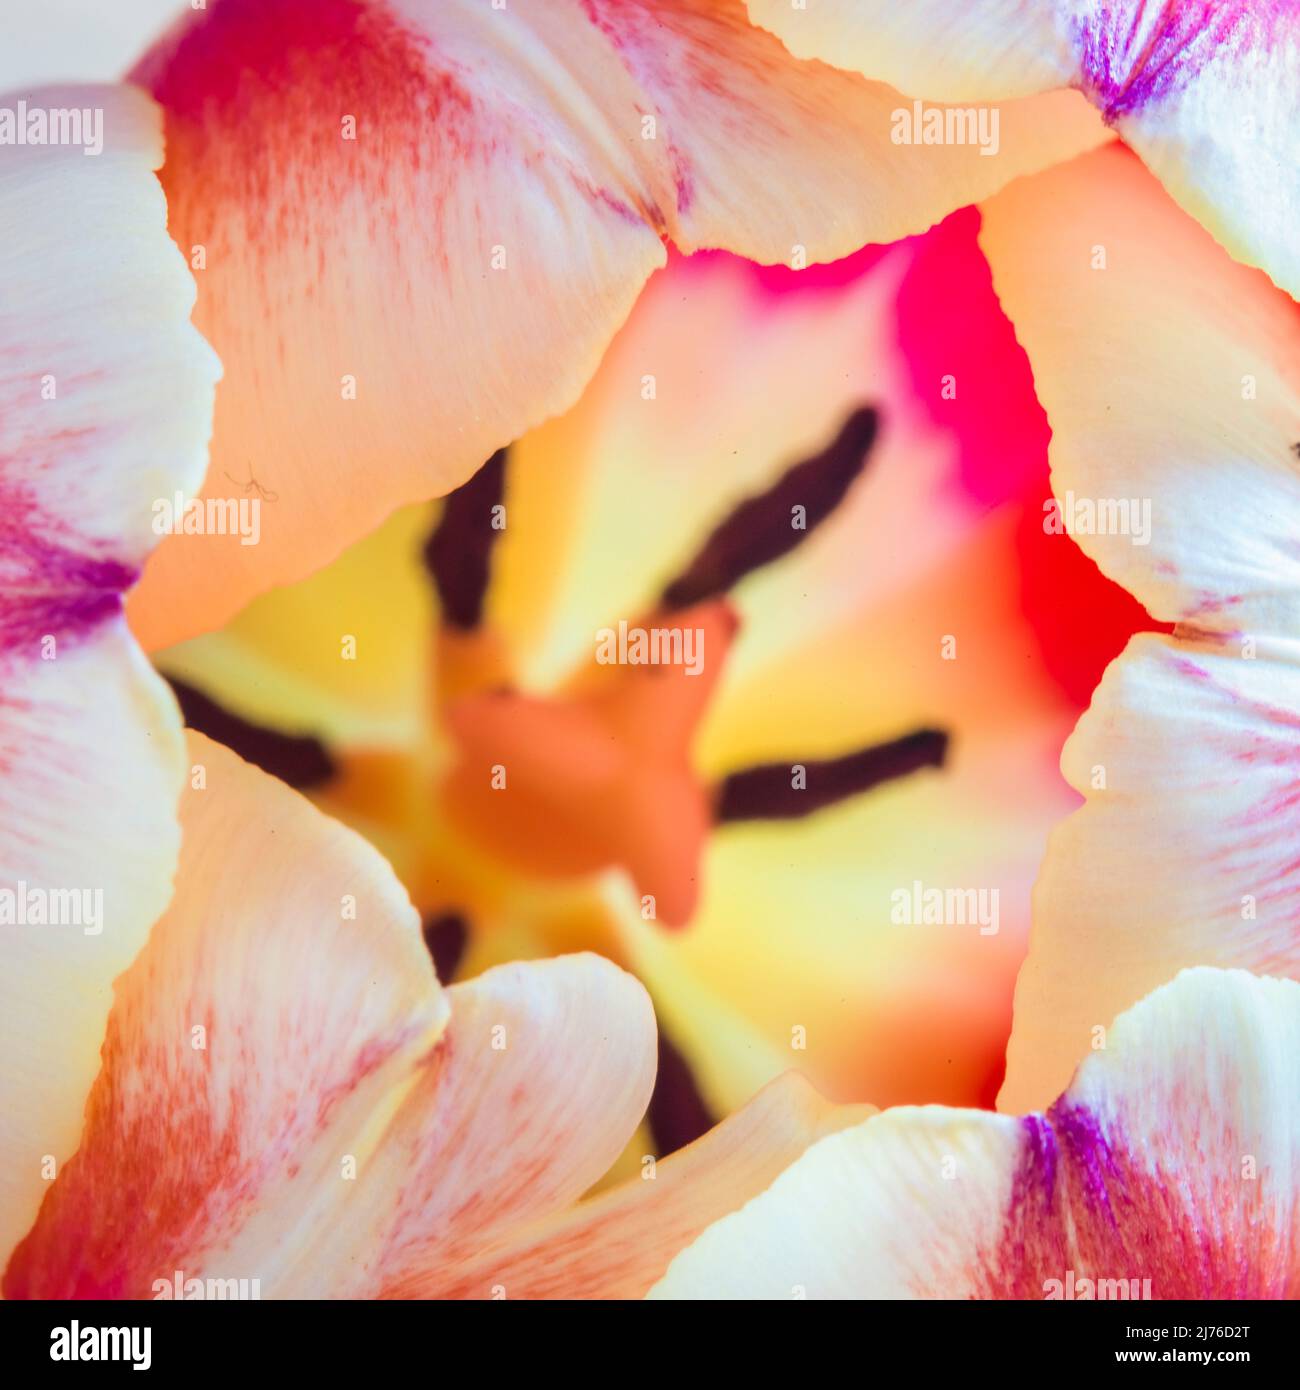 Tulip, flower, macro shot Stock Photo